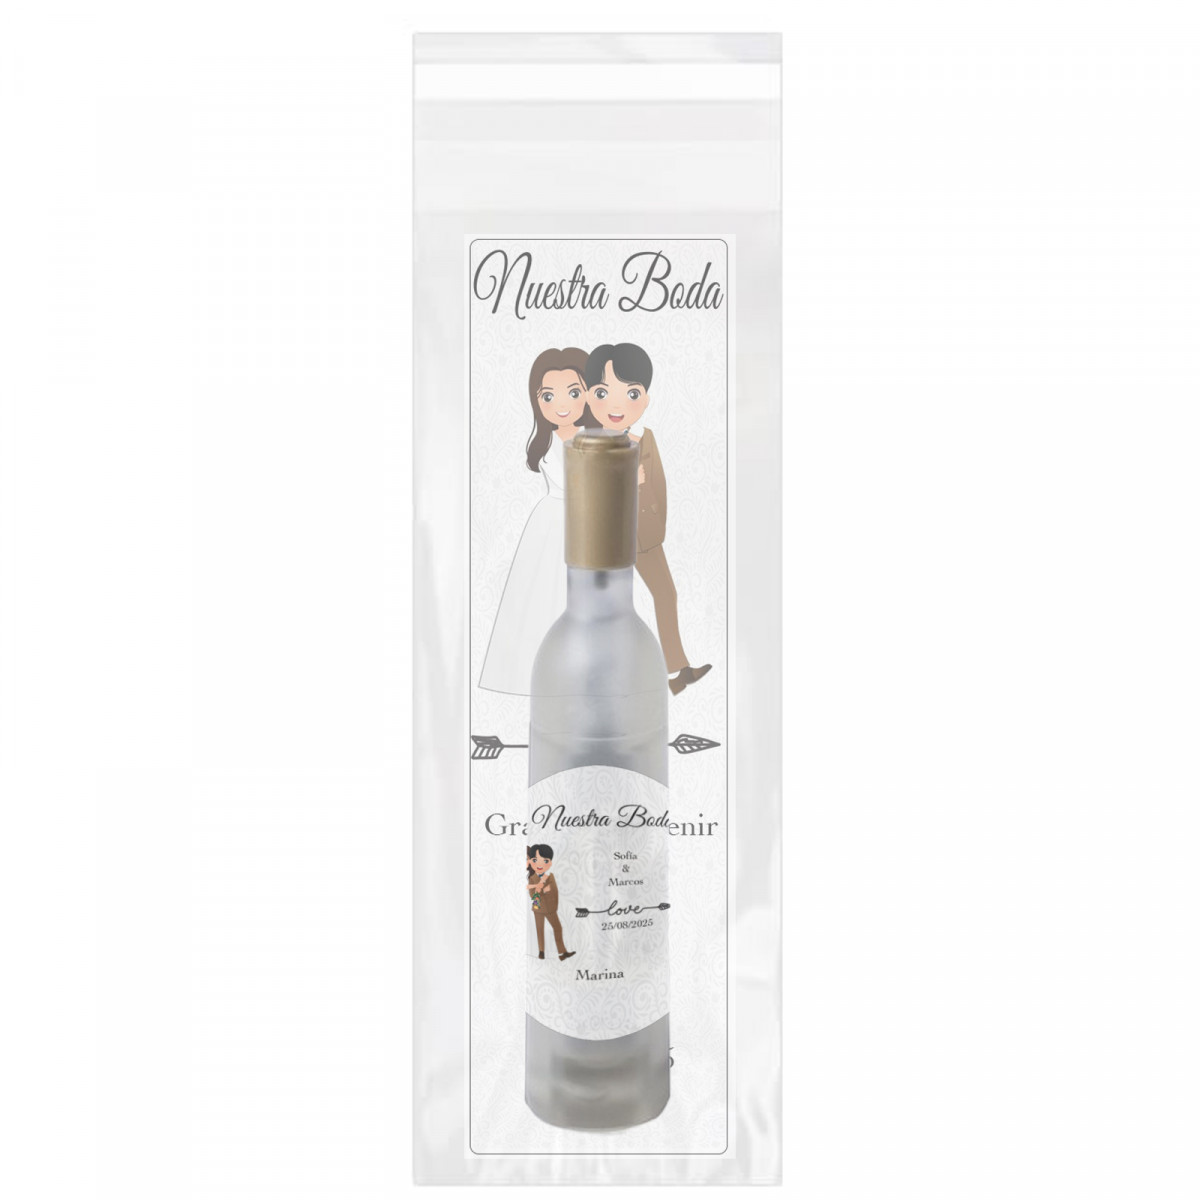 Abridor sacacorchos en forma de botella de vino con marcapáginas y adhesivo de bodas personalizado